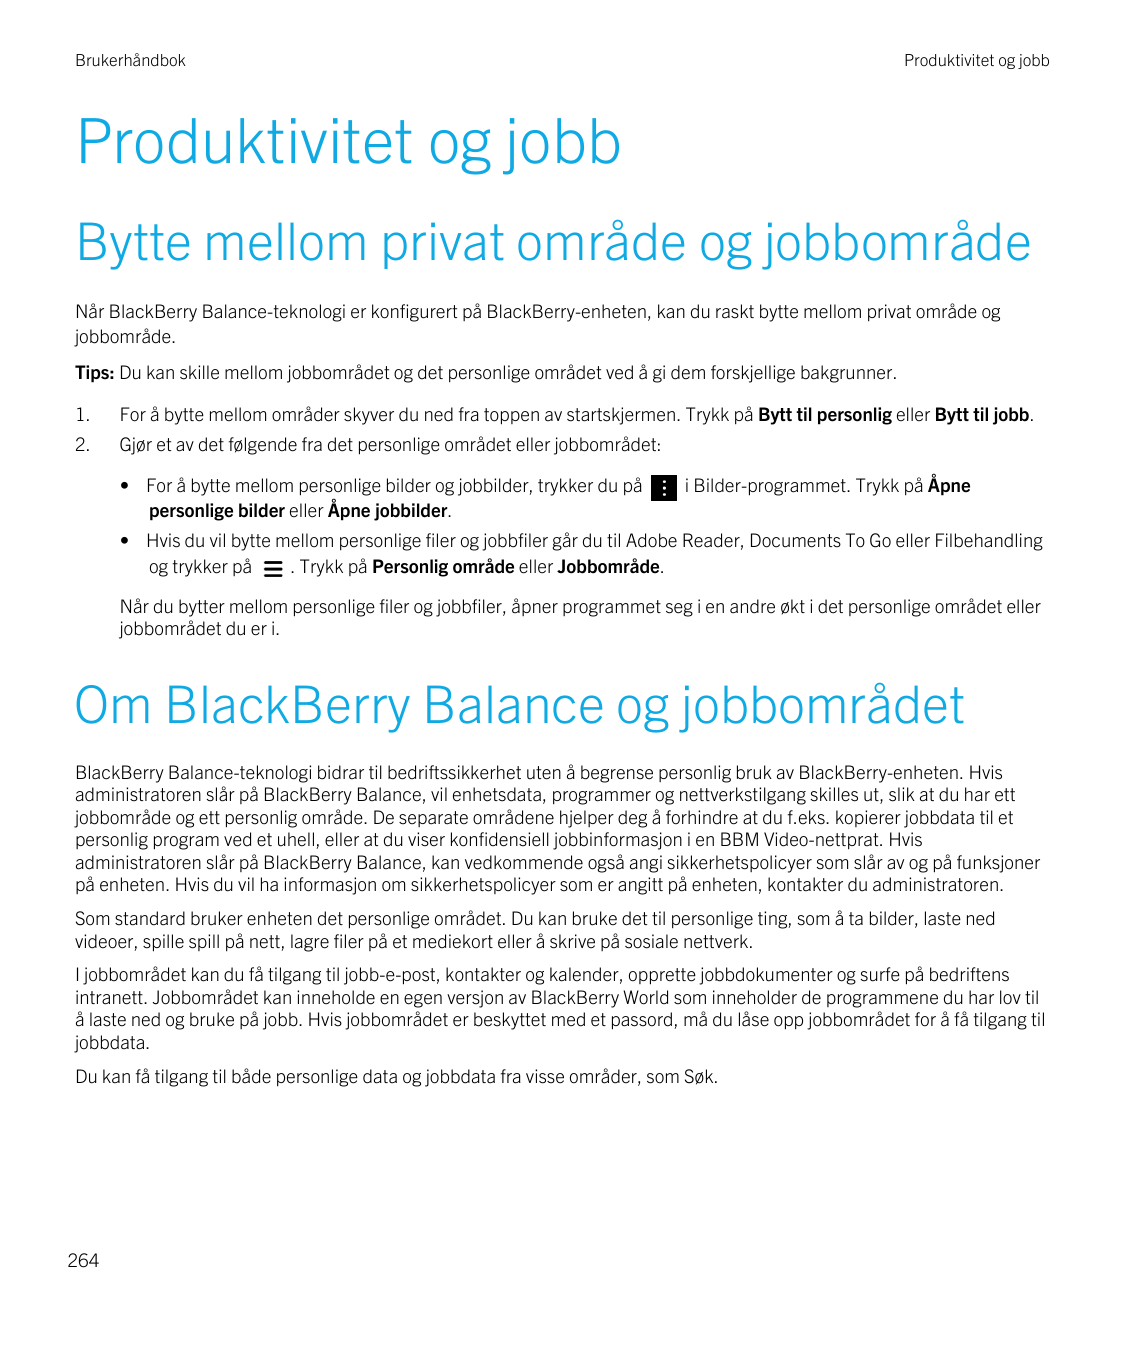 BrukerhåndbokProduktivitet og jobbProduktivitet og jobbBytte mellom privat område og jobbområdeNår BlackBerry Balance-teknologi 